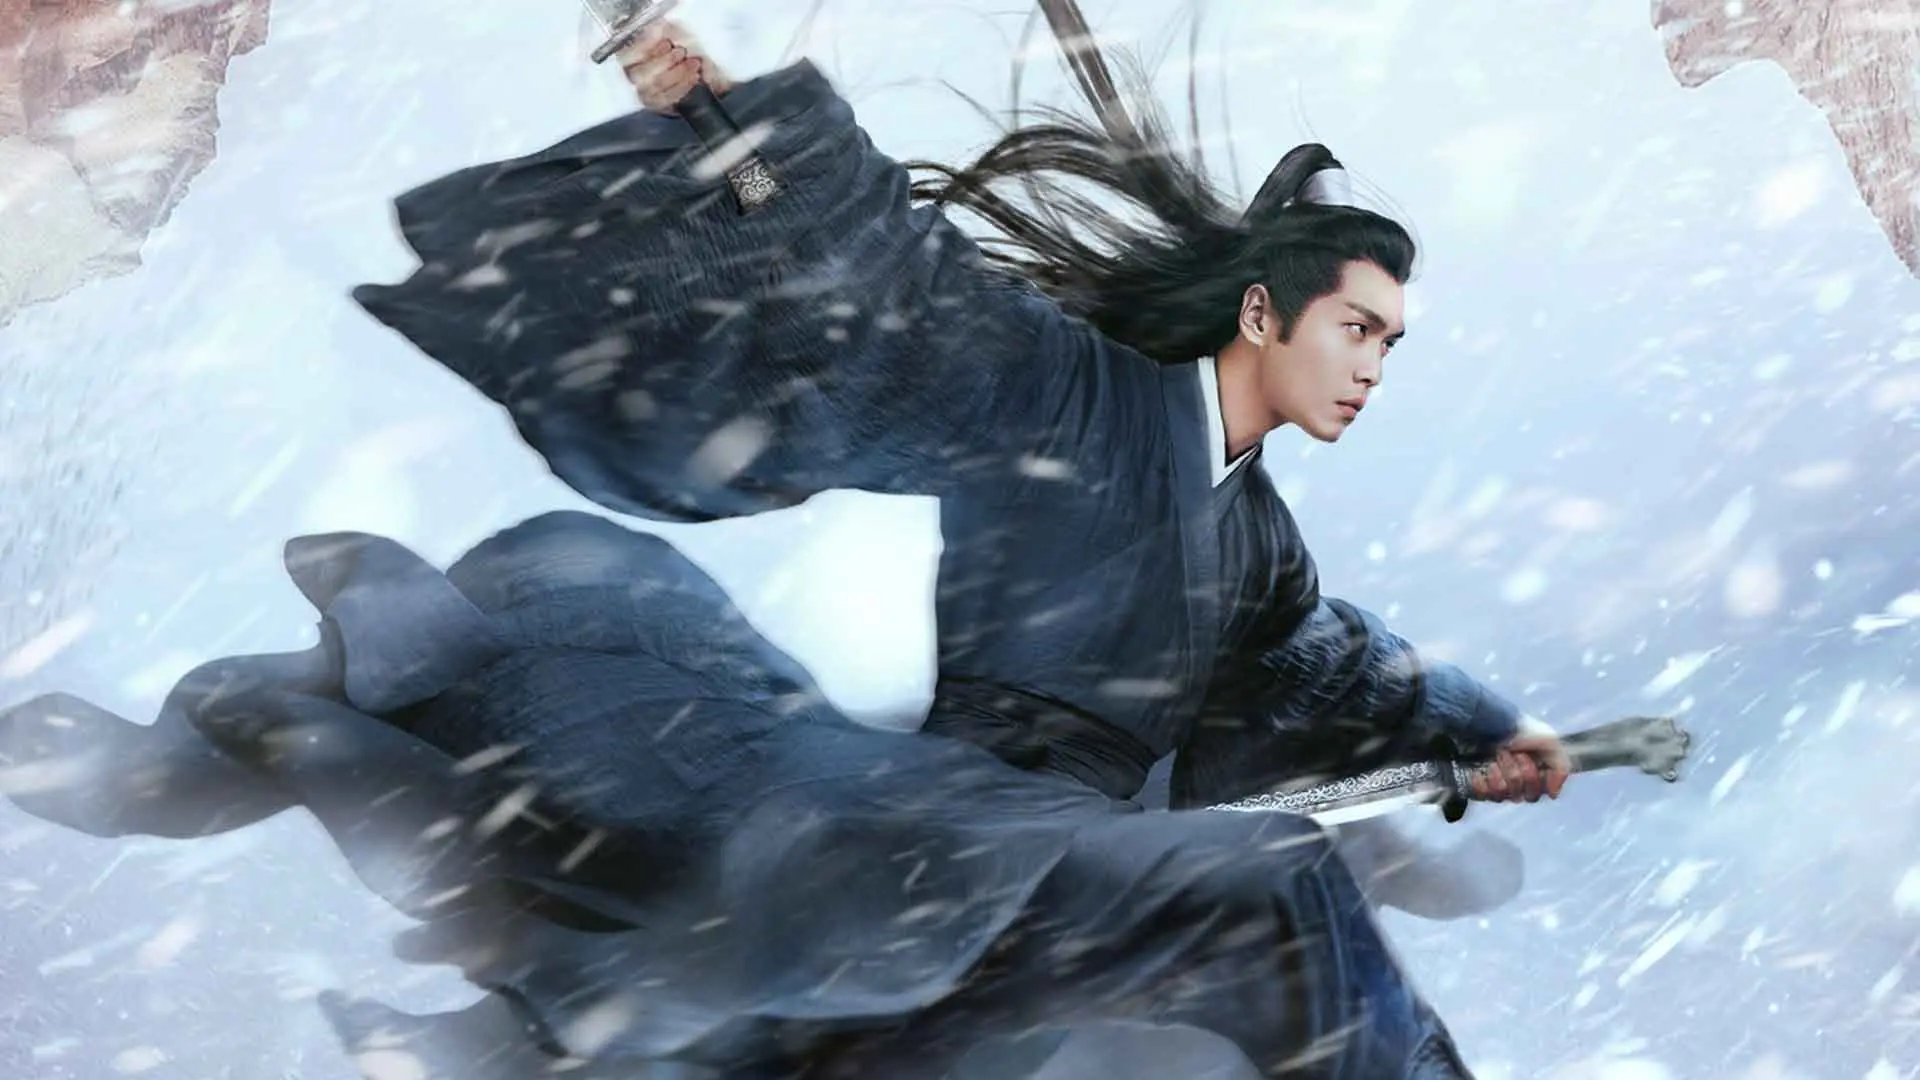 بازیگر اصلی سریال Sword Snow Stride با دو شمشیر در میان برف ۳۰ تا از بهترین سریال های چینی بهمراه امتیاز IMDB ایتی مایتی